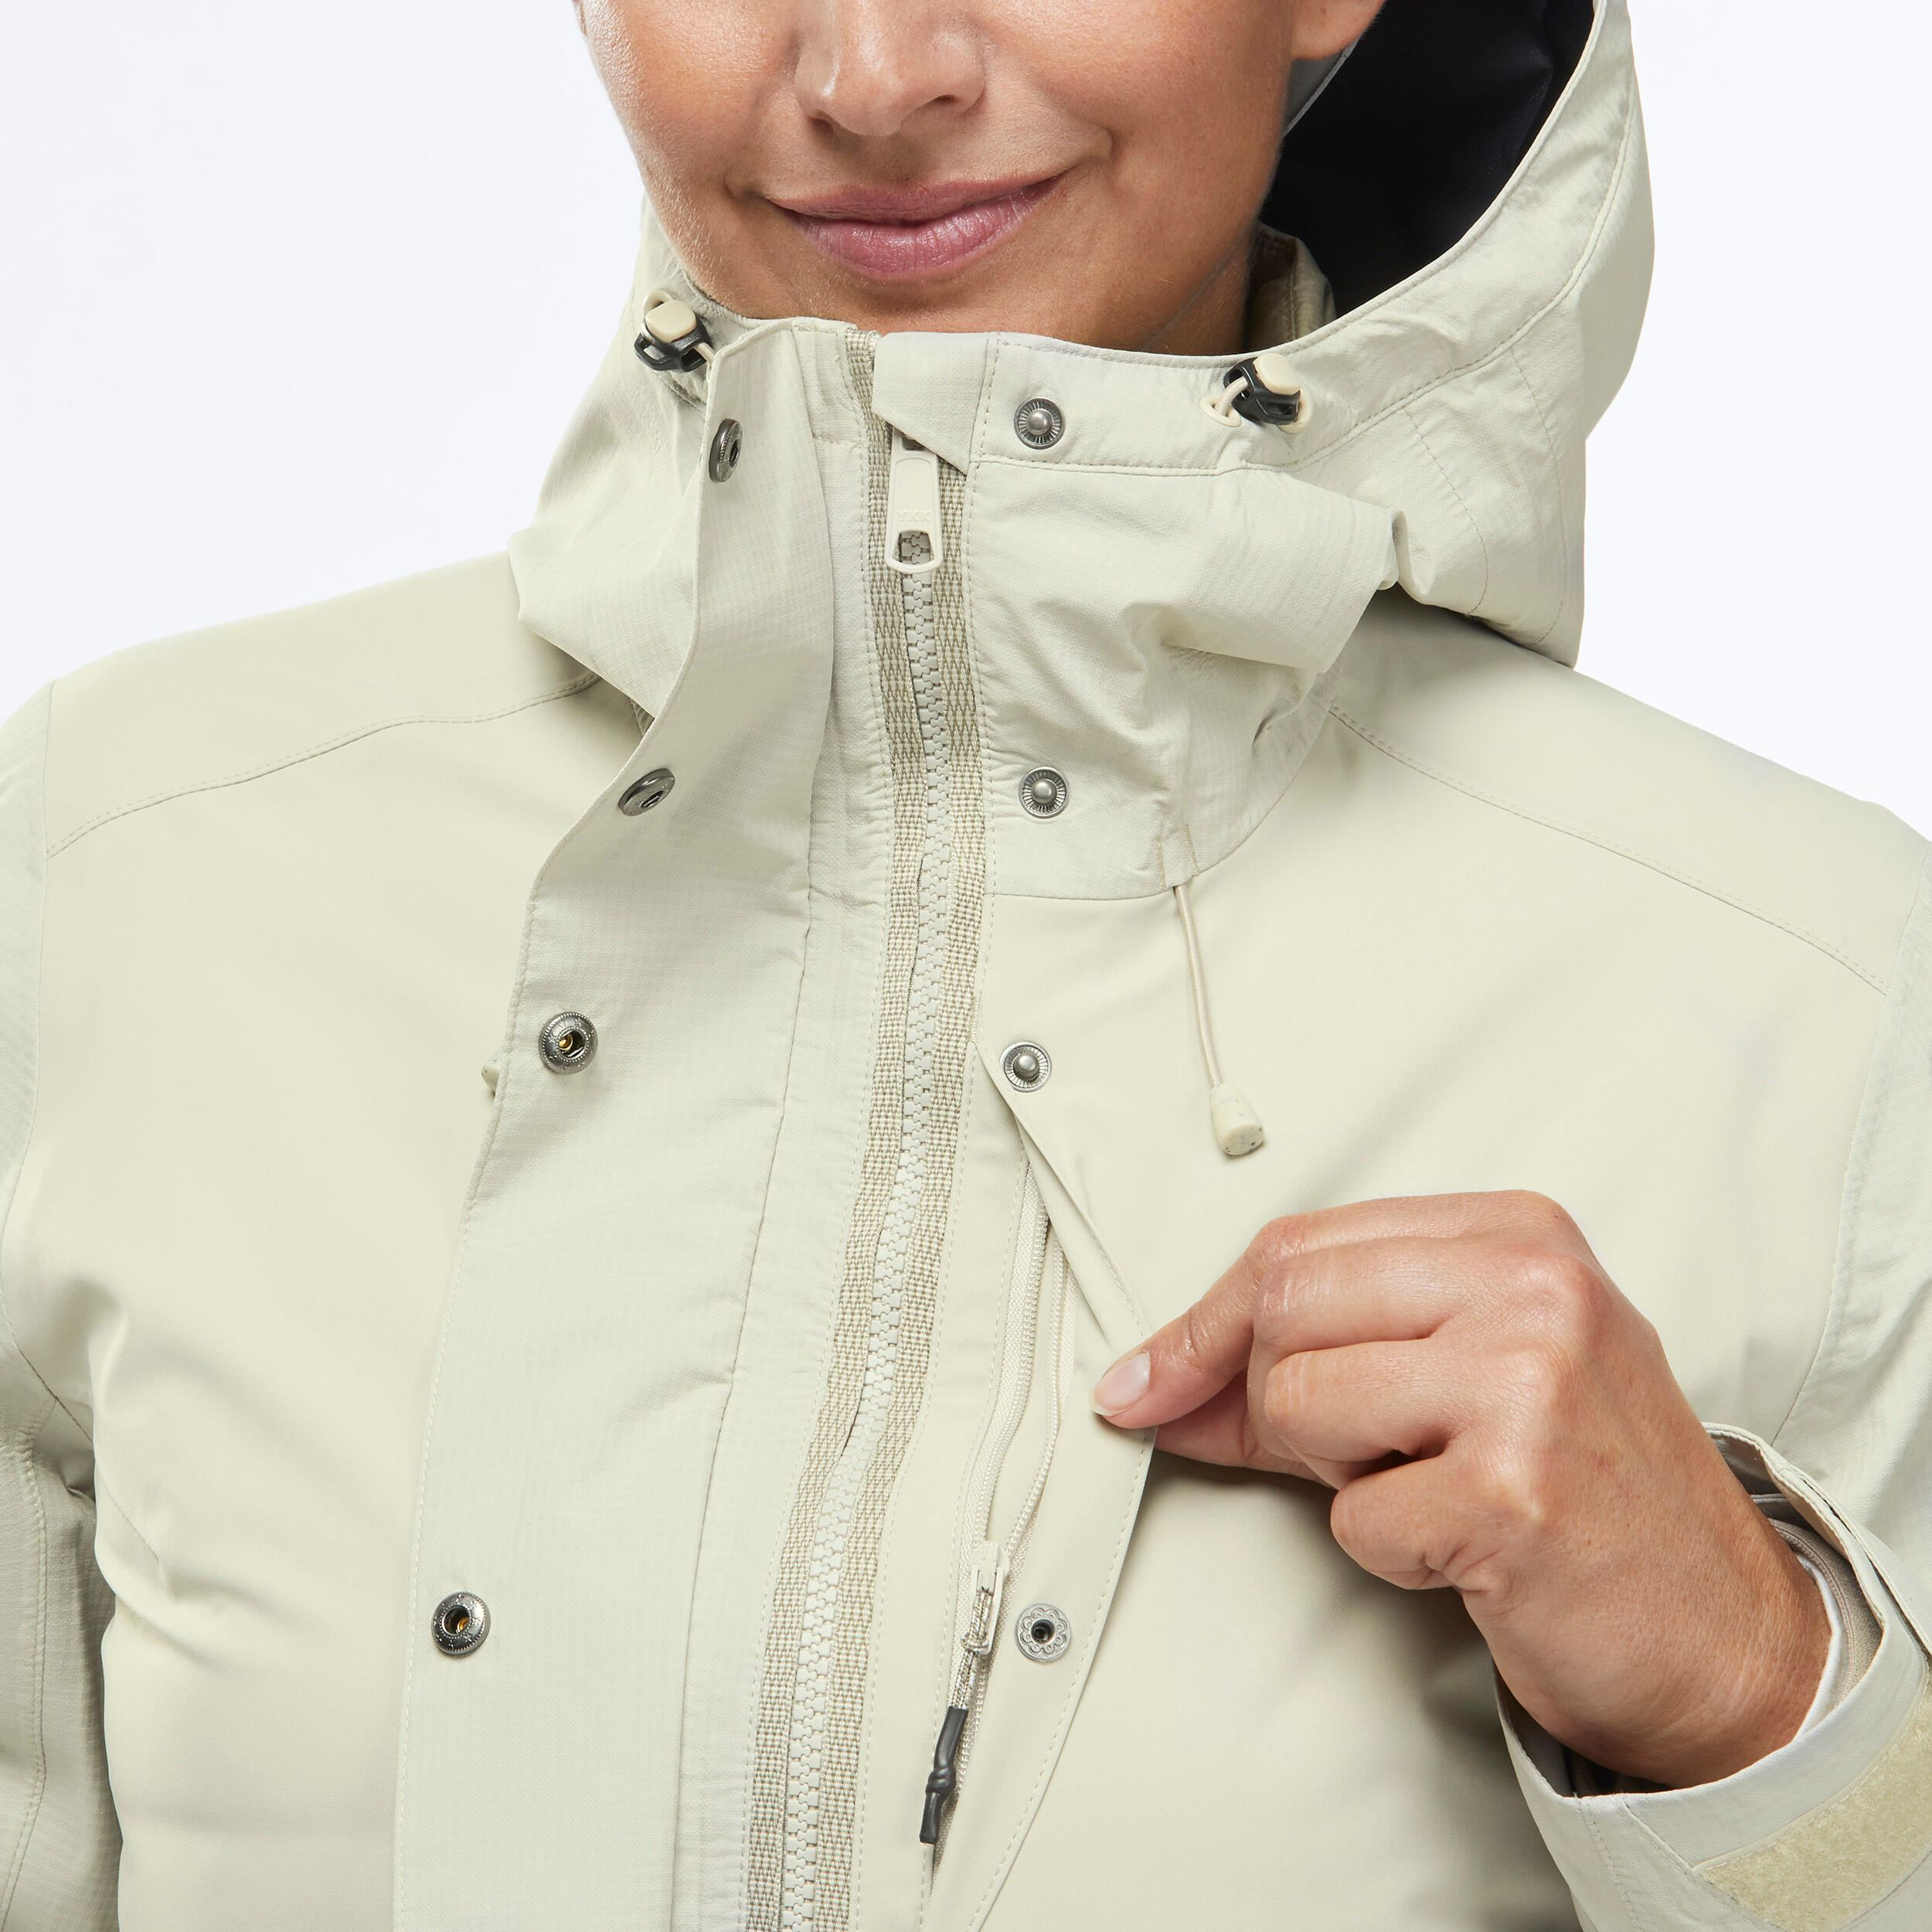 Women's waterproof 3in1 Travel trekking jacket - Travel 900 compact -10° - Beige 9/15